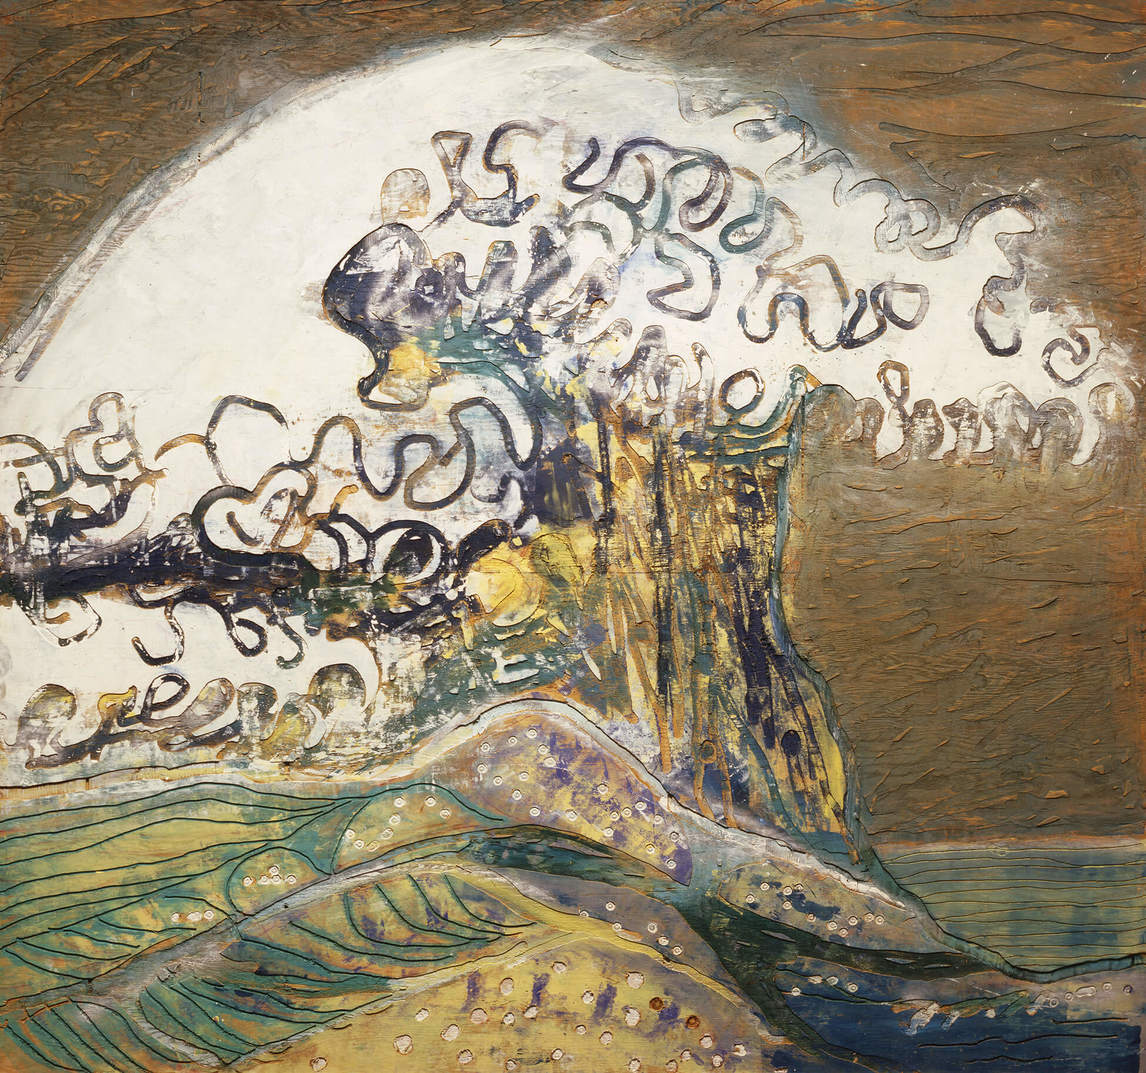 Paterson Ewen, The Great Wave—Homage to Hokusai (La grande vague — hommage à Hokusai), 1974